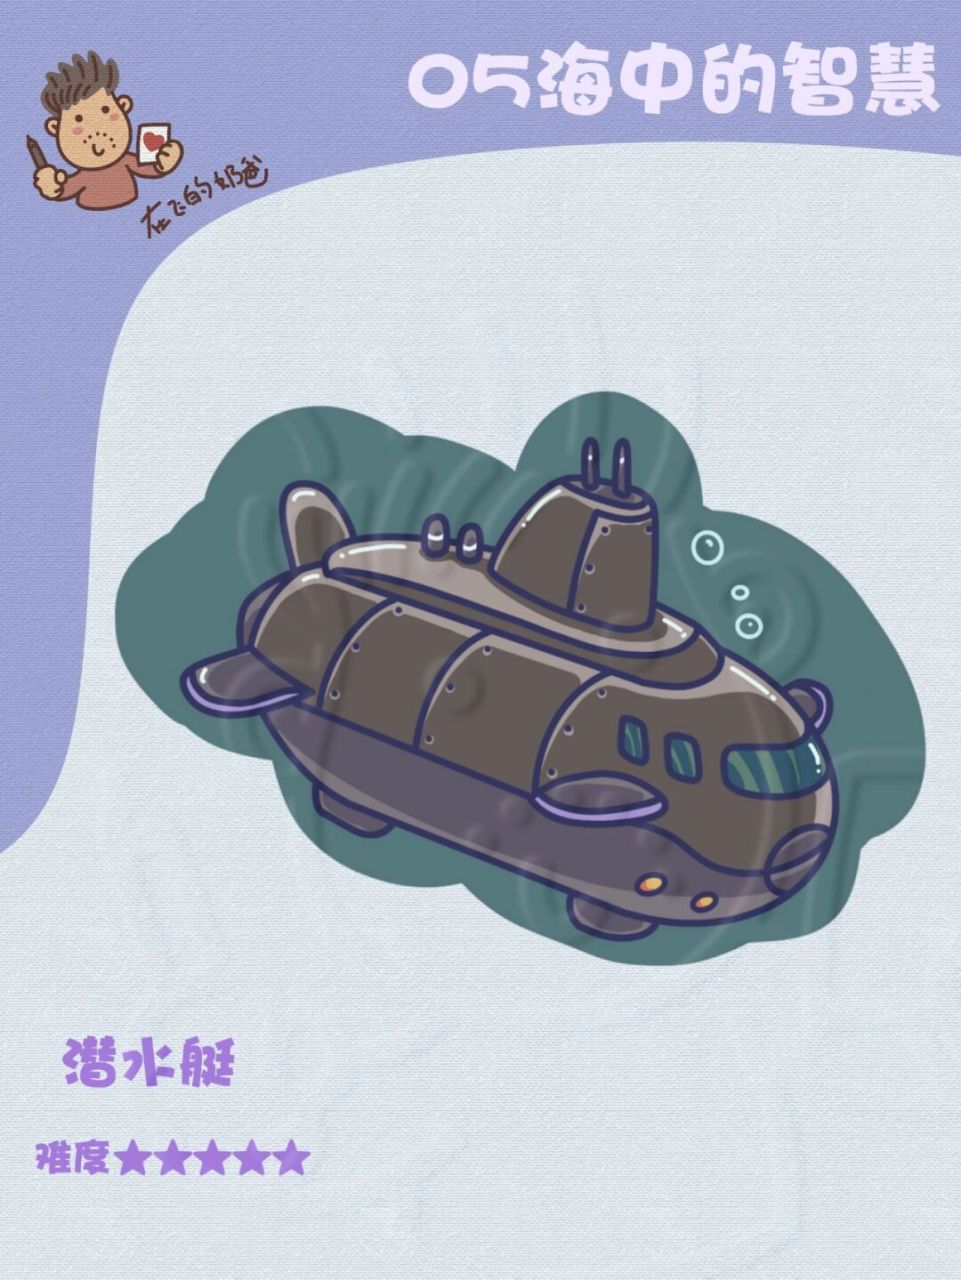 军事潜水艇简笔画图片